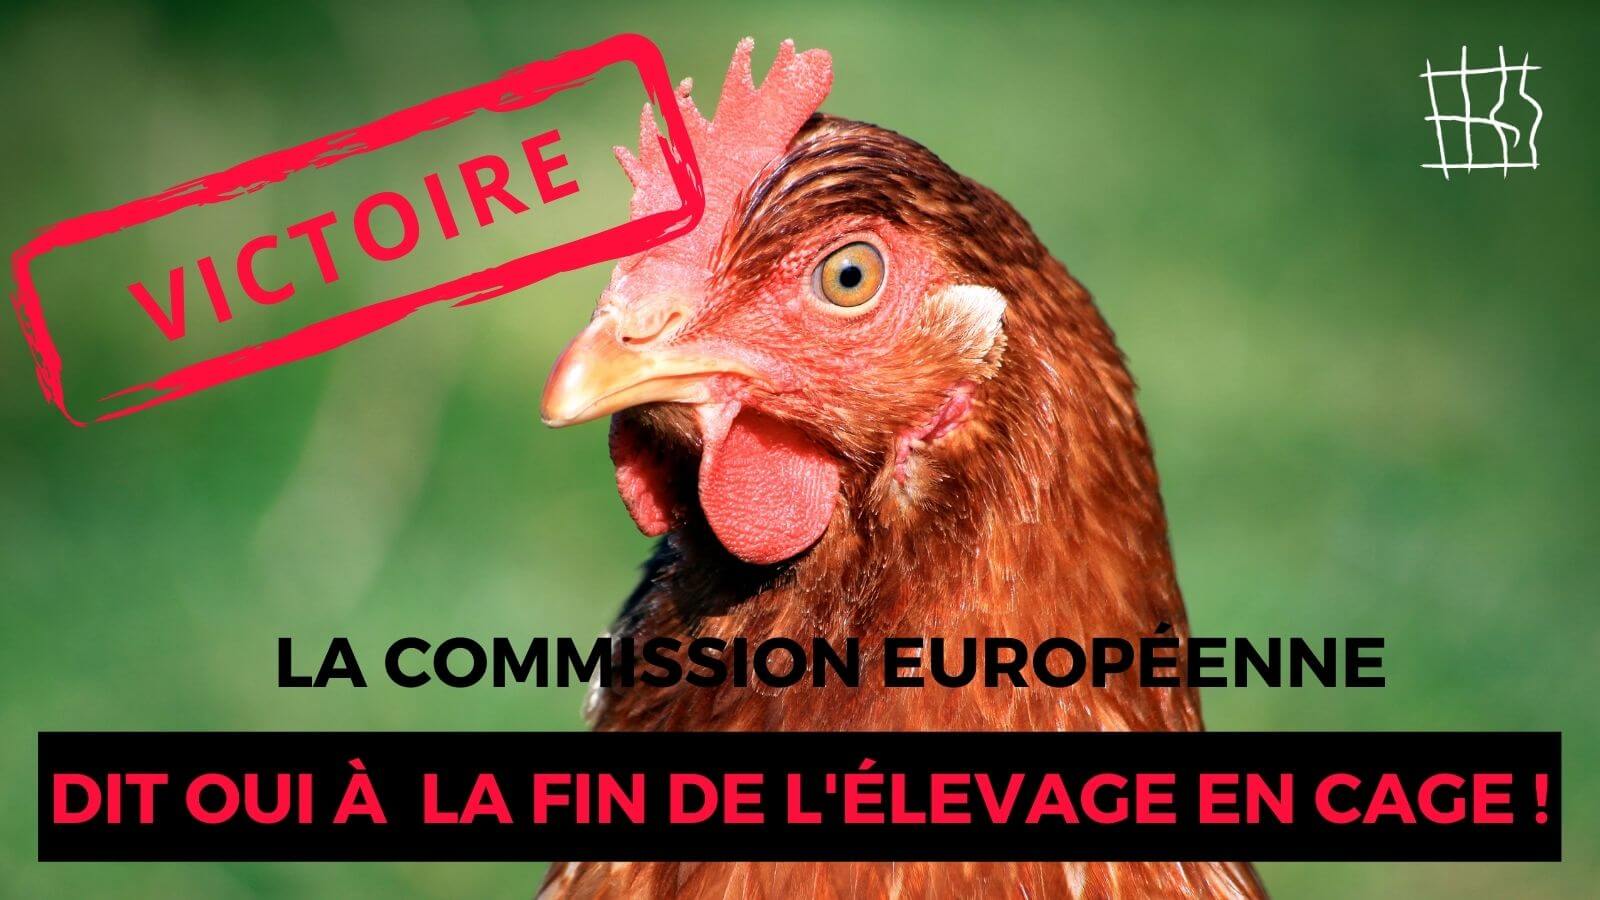 L’histoire est en marche ! La Commission européenne s’engage à interdire l’élevage en cage